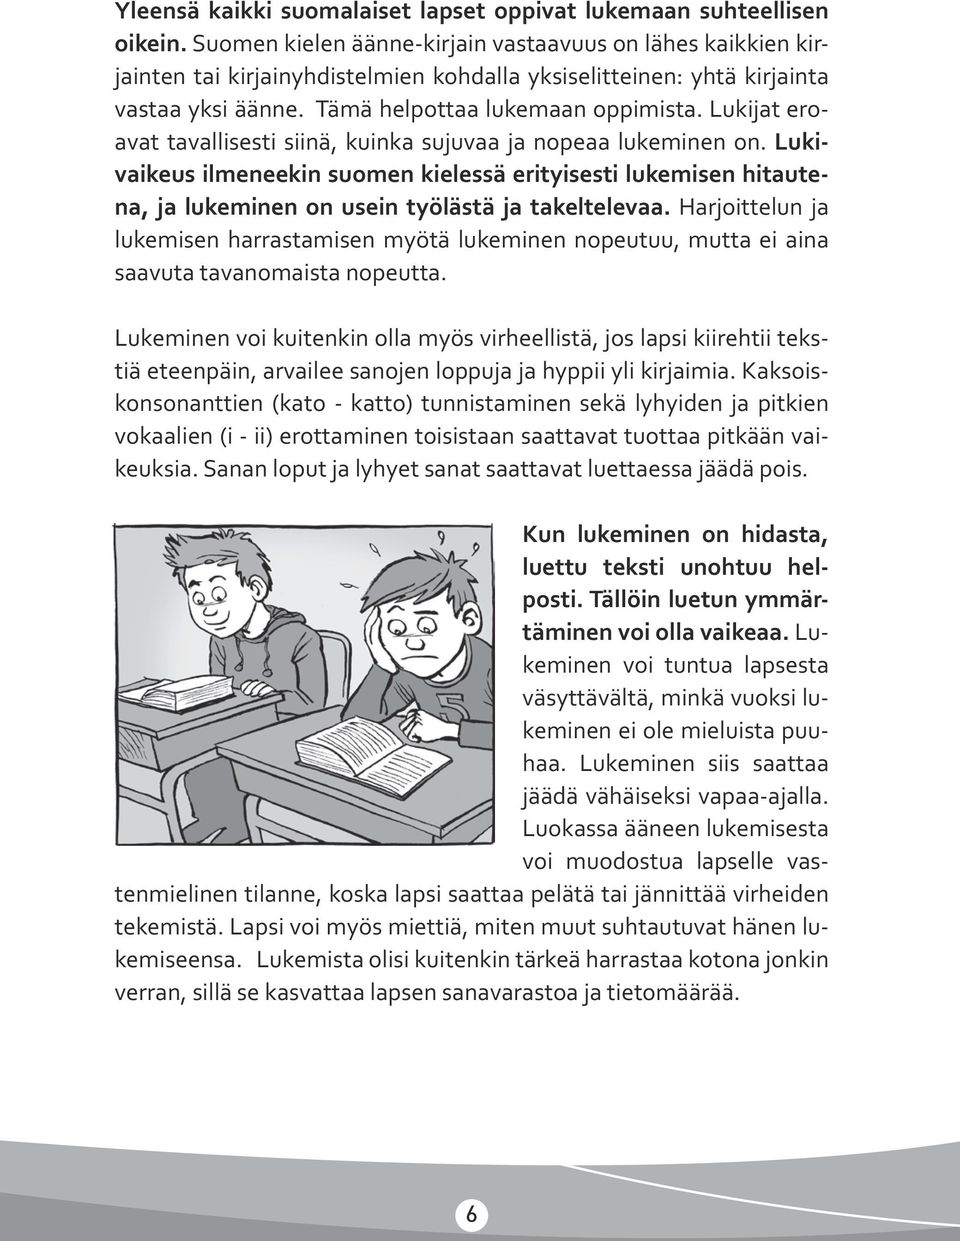 Lukijat eroavat tavallisesti siinä, kuinka sujuvaa ja nopeaa lukeminen on. Lukivaikeus ilmeneekin suomen kielessä erityisesti lukemisen hitautena, ja lukeminen on usein työlästä ja takeltelevaa.